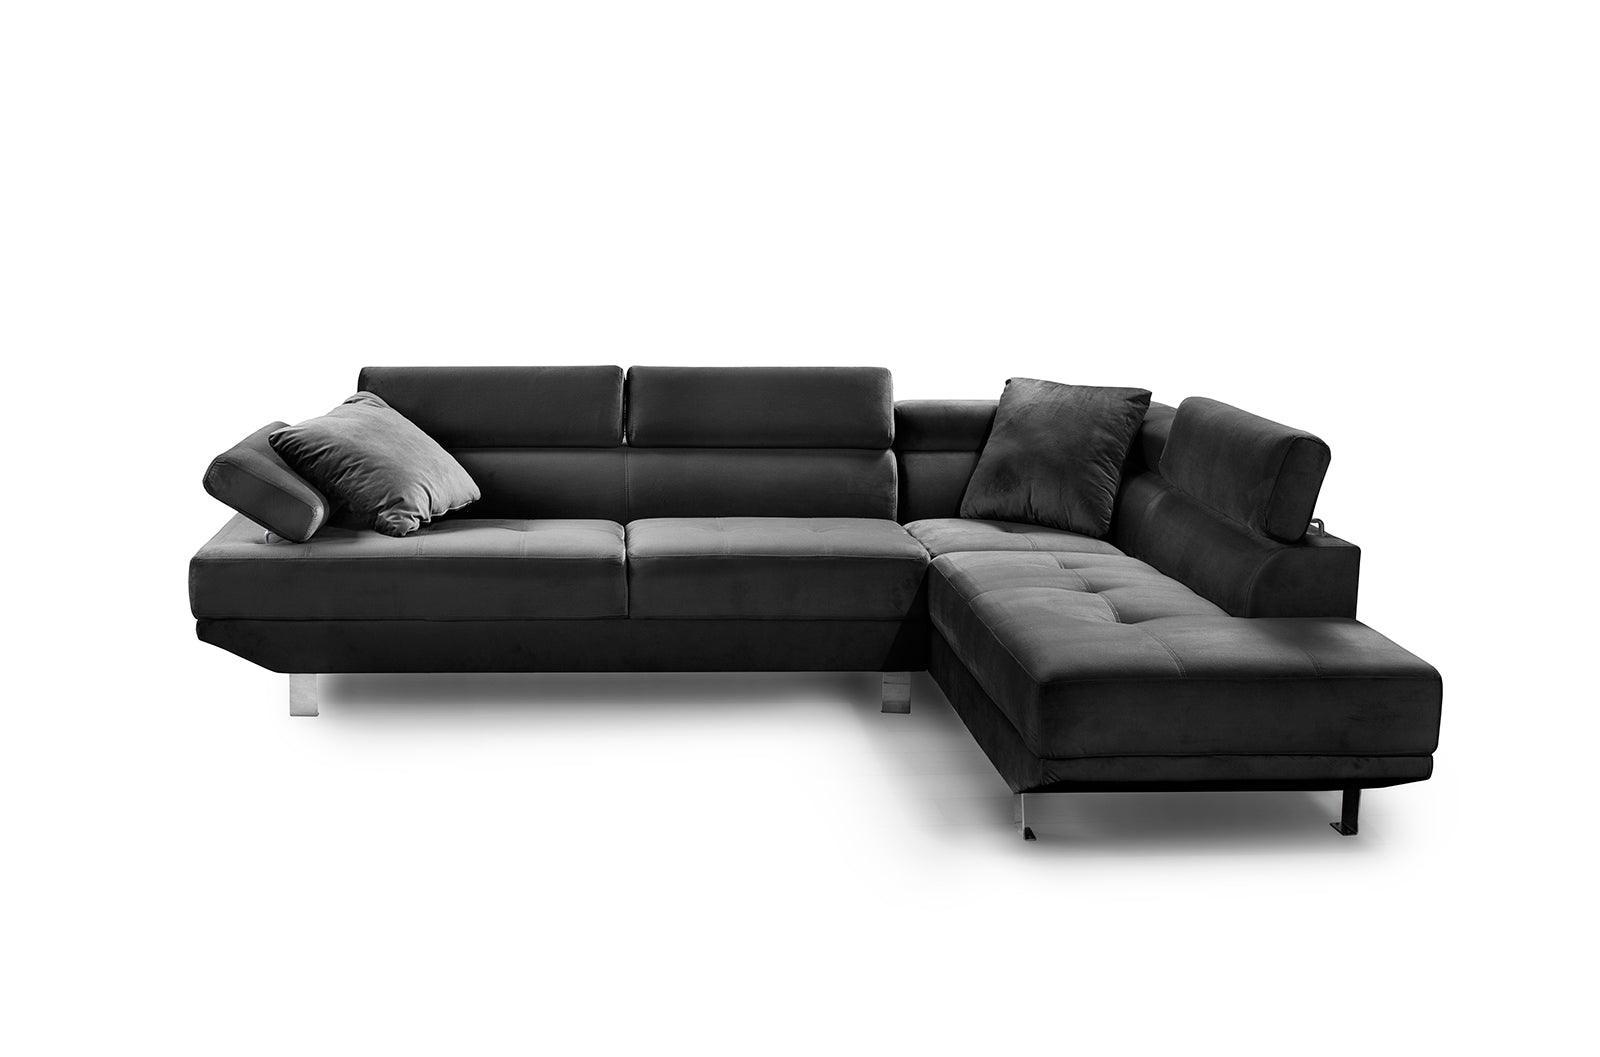 Sofa rinconero modelo Dasam, Chaise Longues